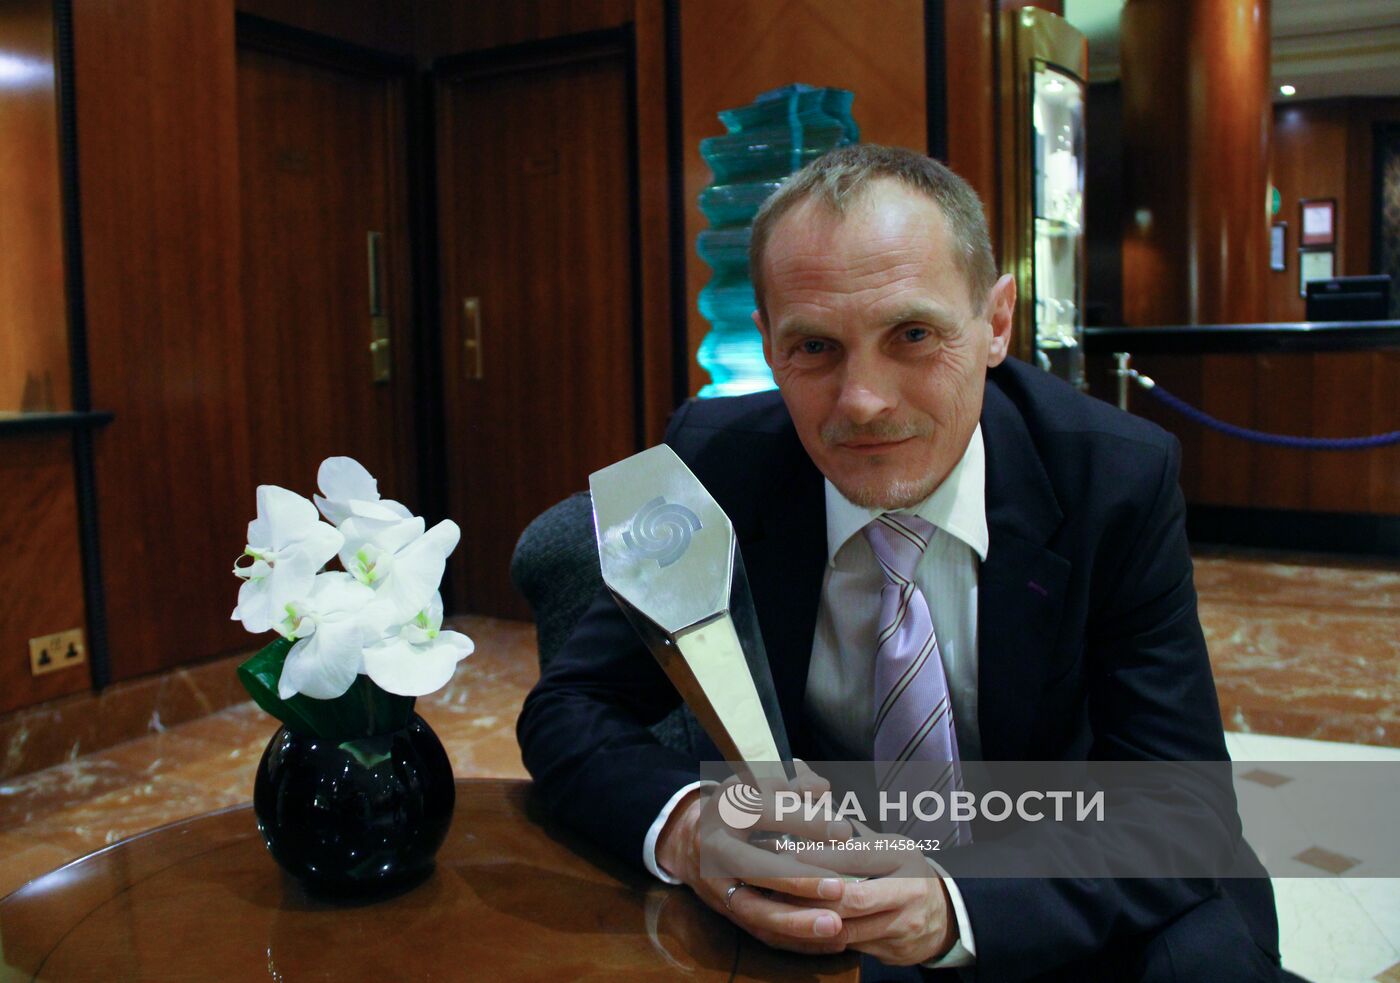 Фотограф И.Питалев удостоен премии Sony World Photography Awards